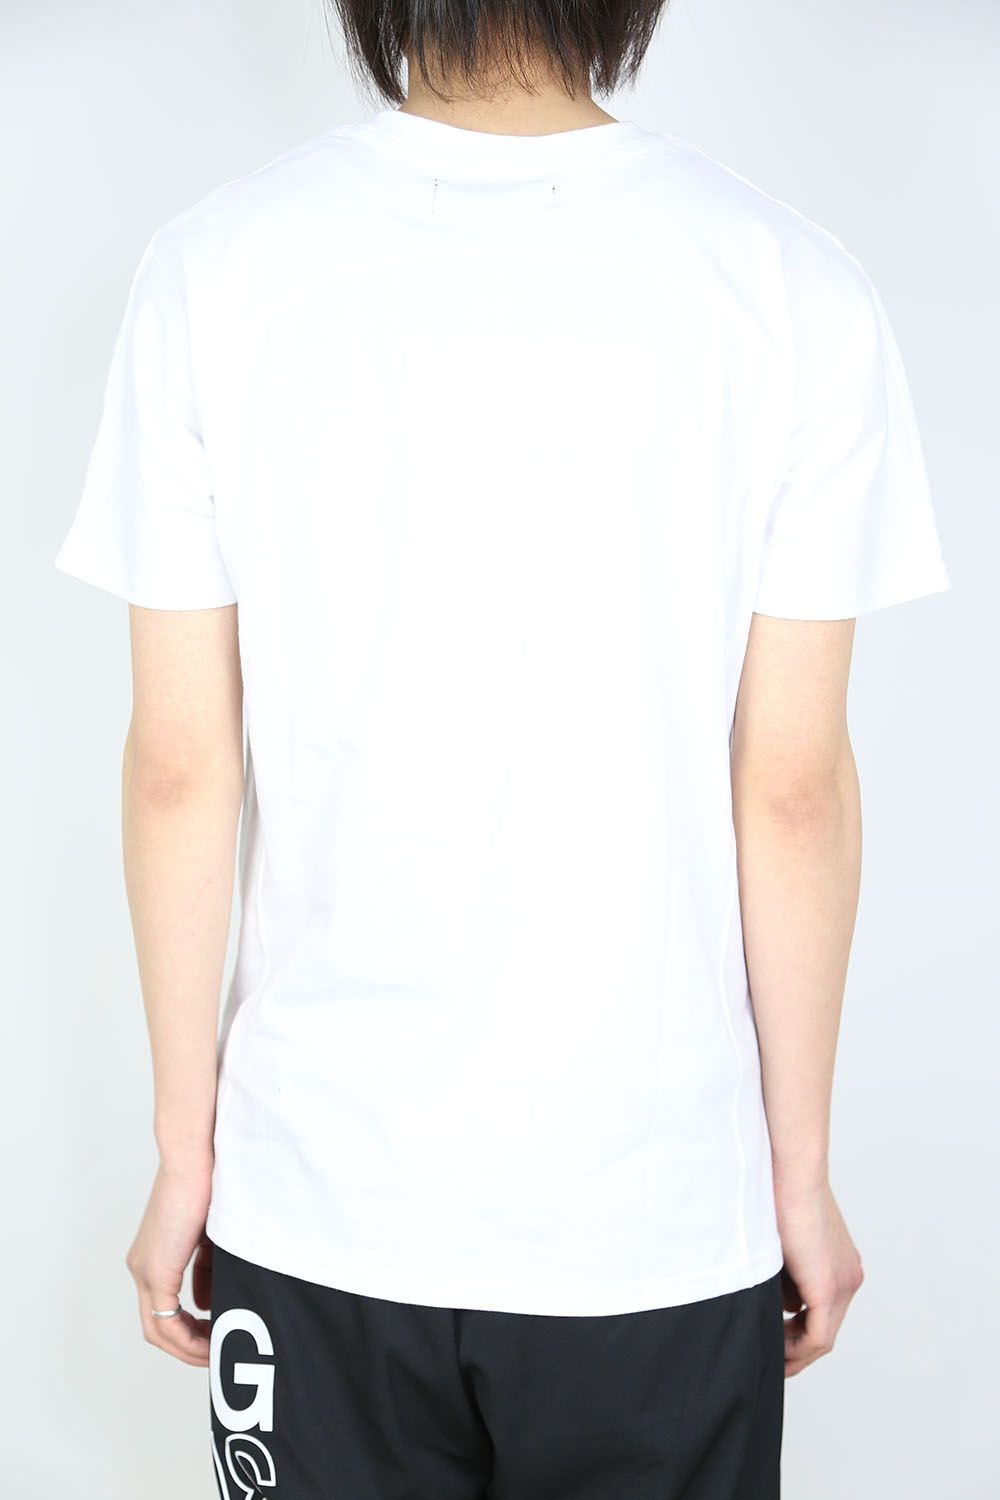 レインボー3DロゴTシャツ / ホワイト - S